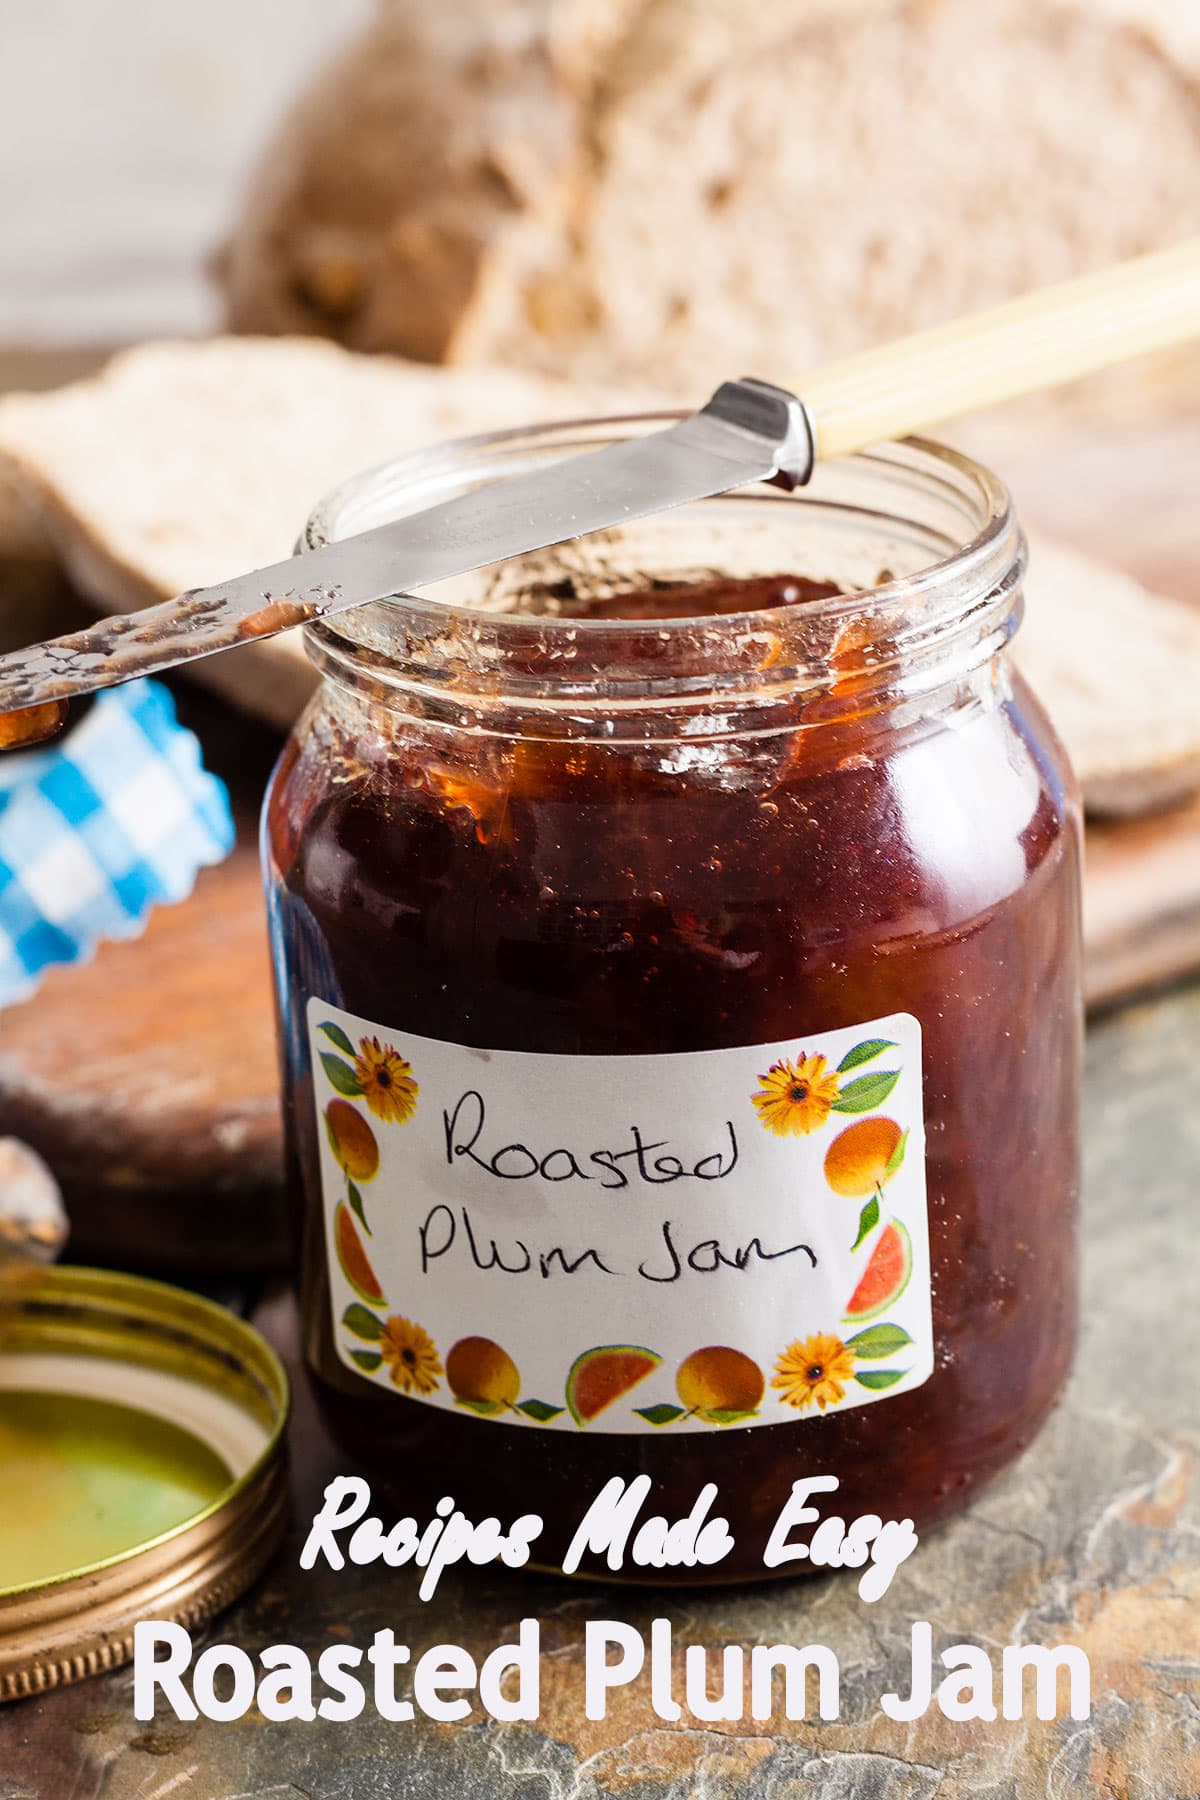 Roasted Plum Jam | Recipes Made Easy